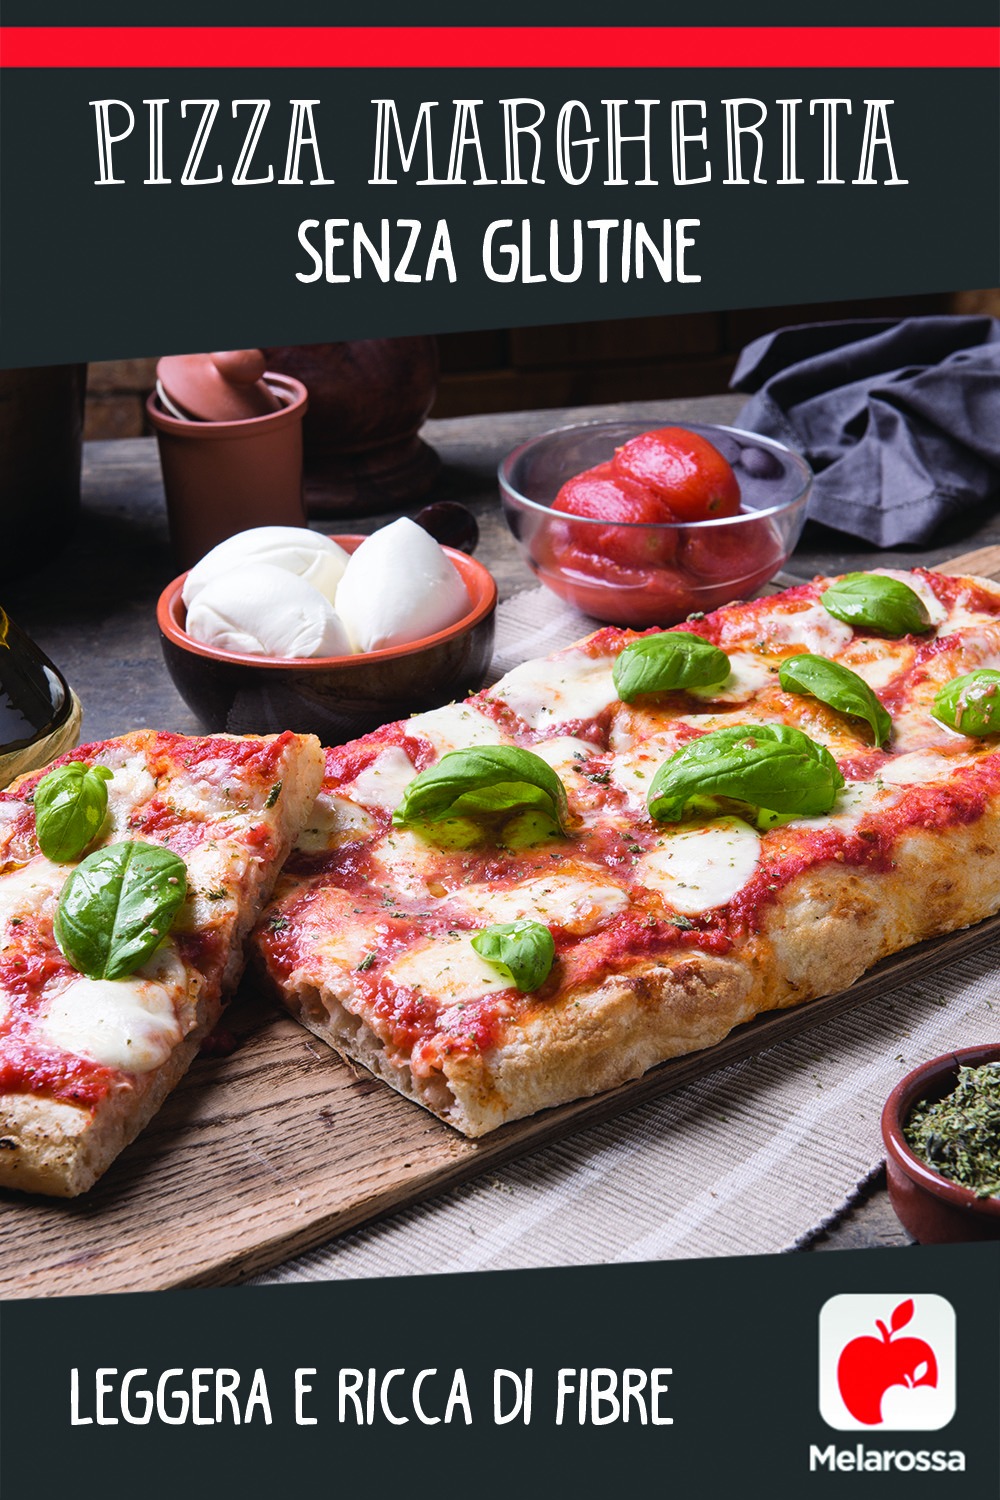 Pizza Margherita senza glutine: leggera e ricca di fibre